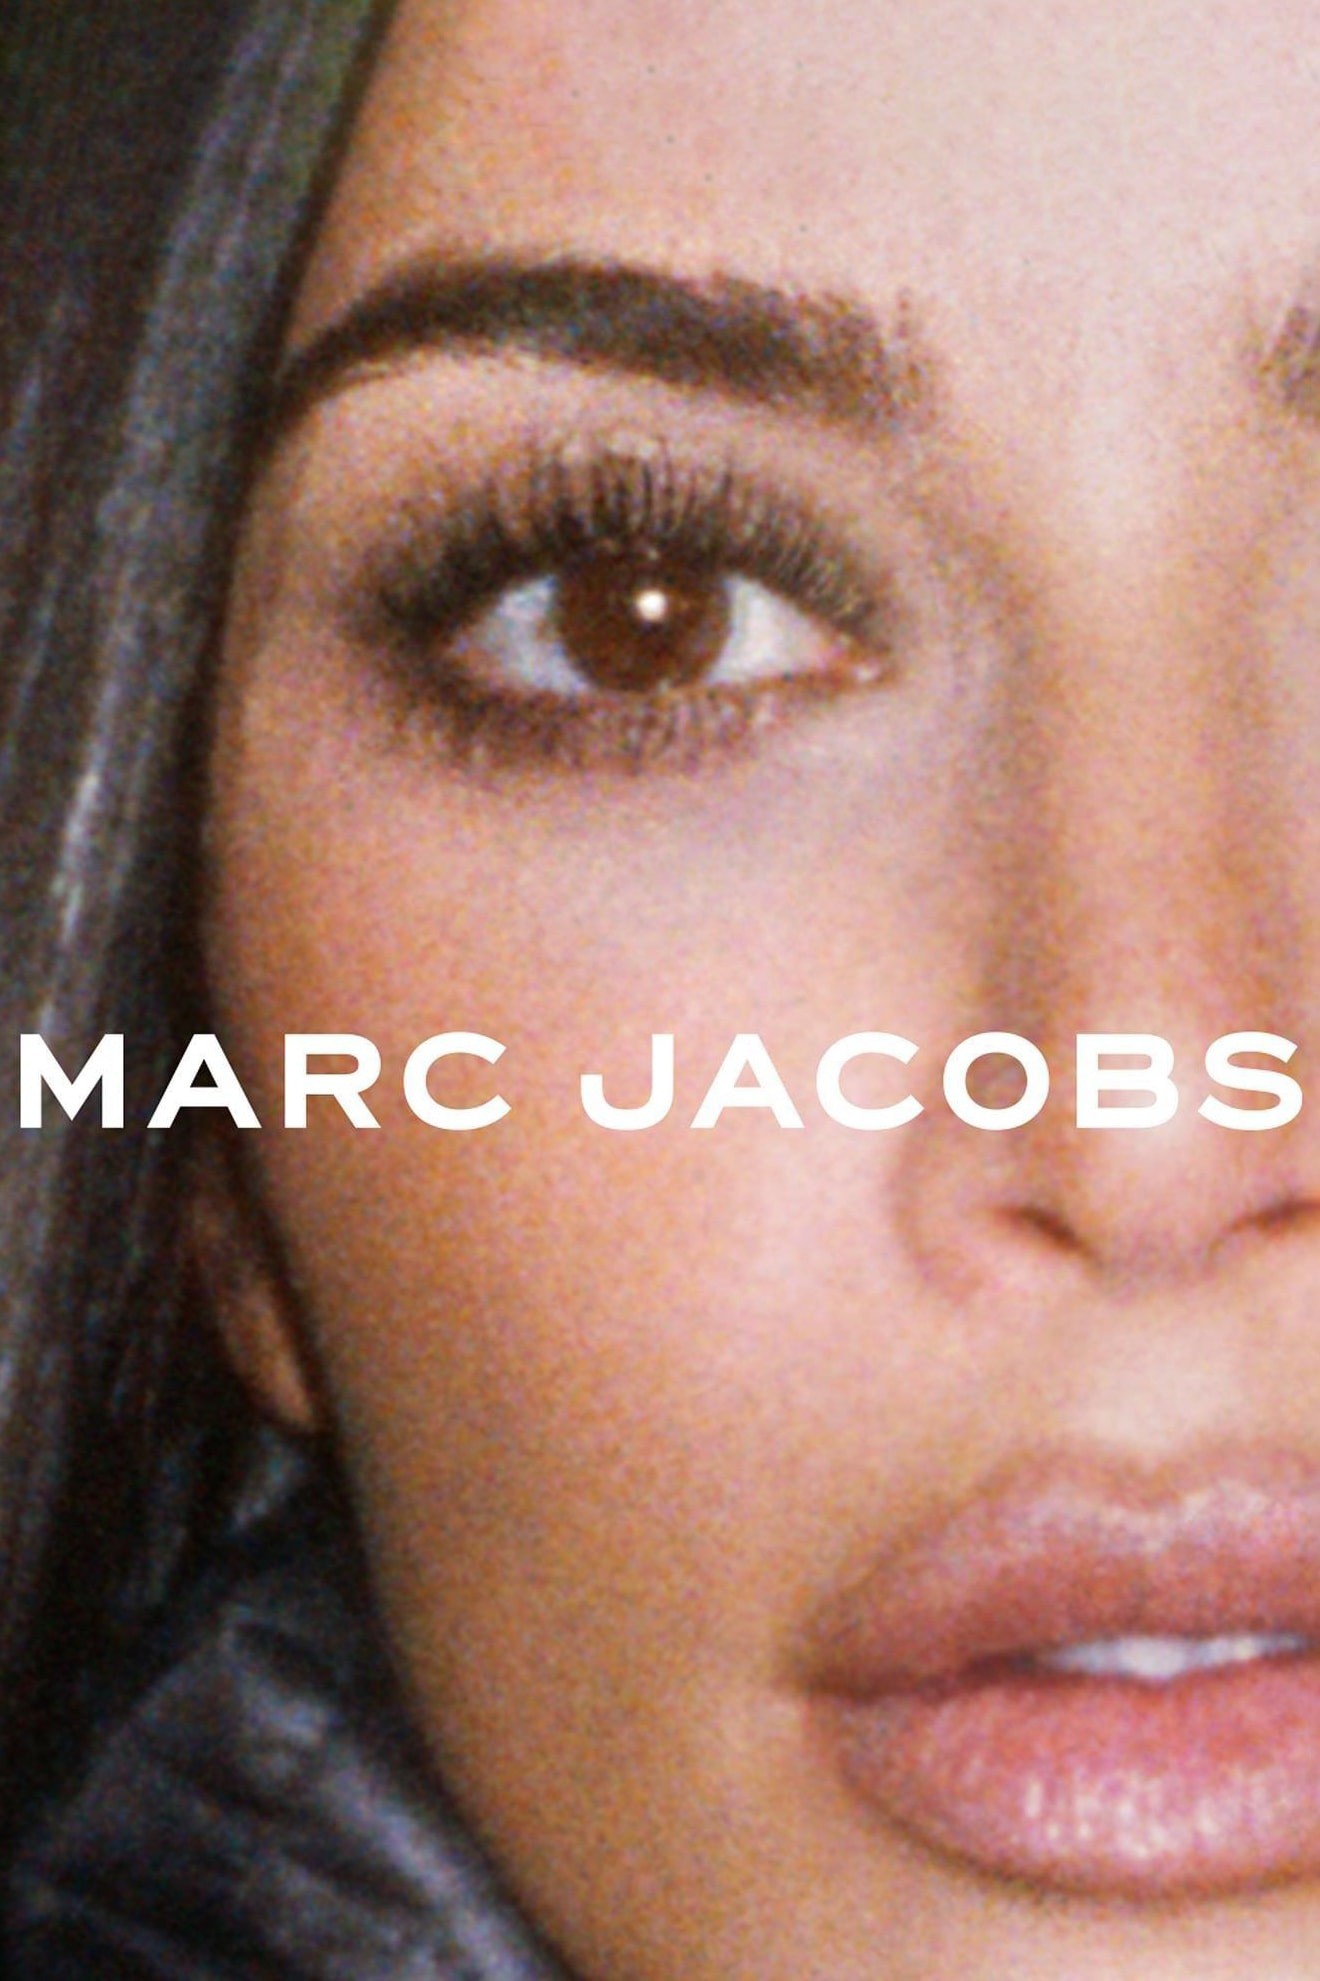 Kim Kardashian bị phản ứng khi đại diện cho chiến dịch của Marc Jacobs - 1